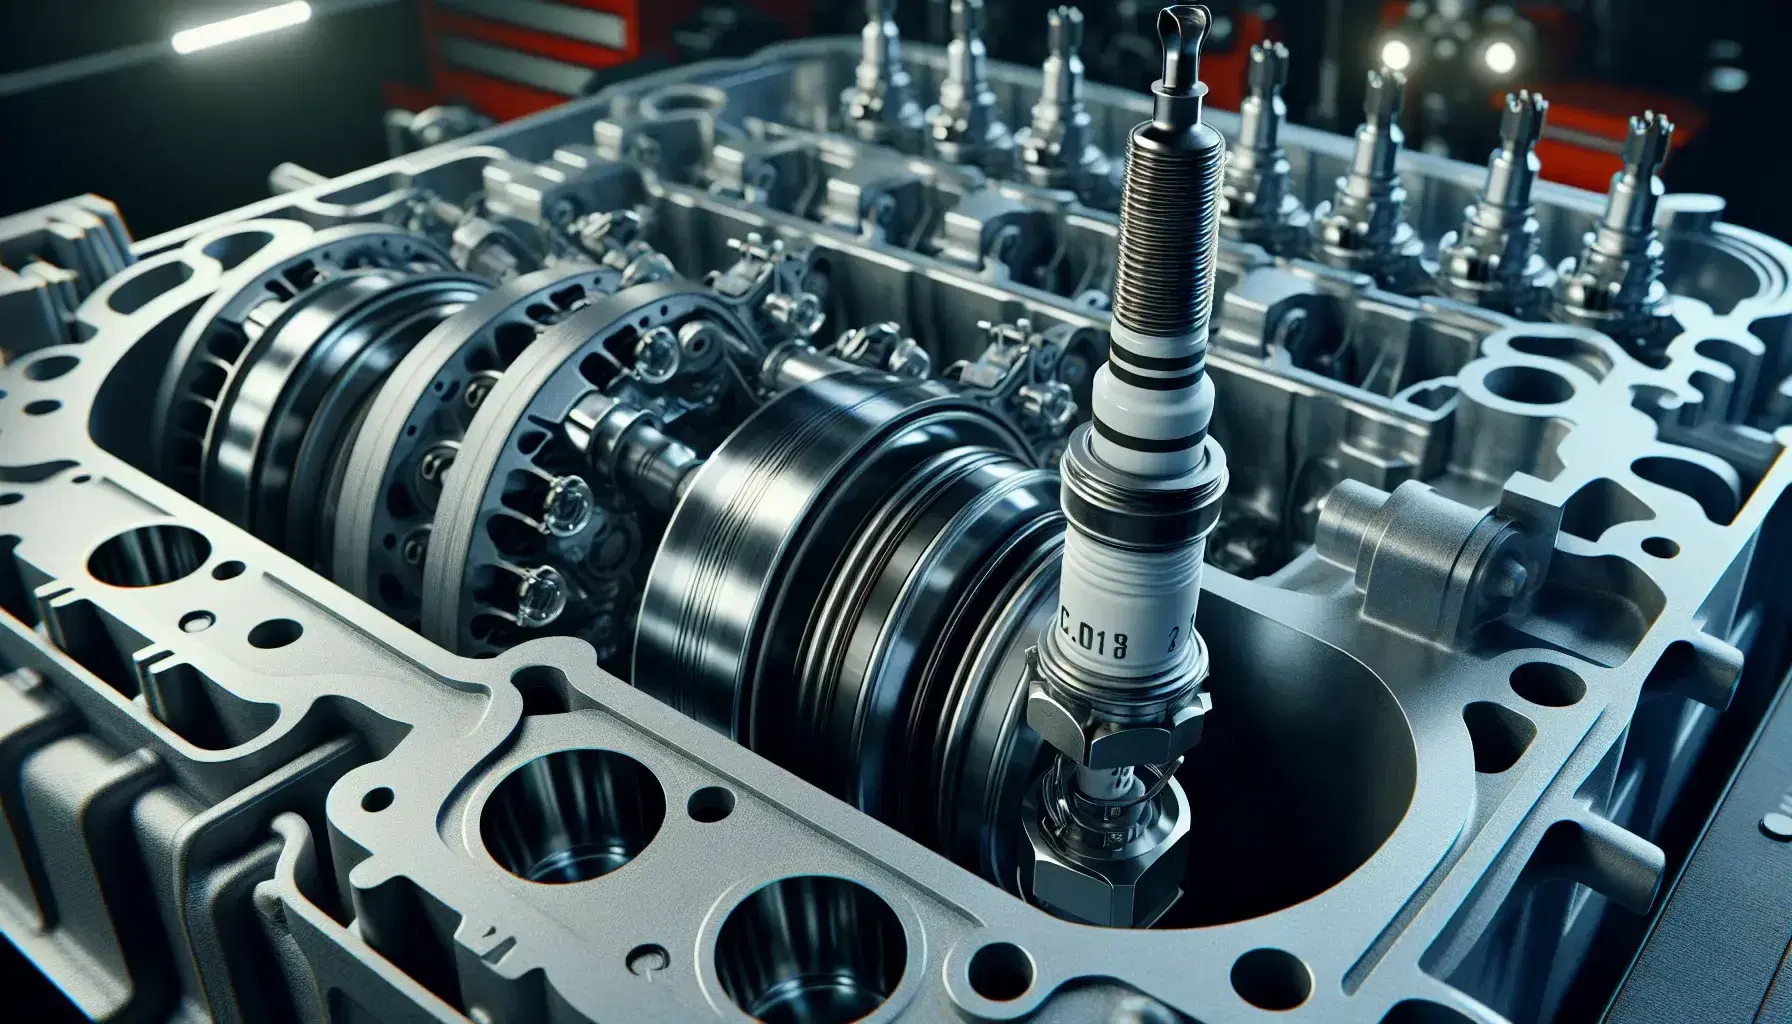 Pistón metálico en cilindro de motor de combustión interna con válvulas cerradas y bujía conectada, destacando texturas y componentes metálicos.